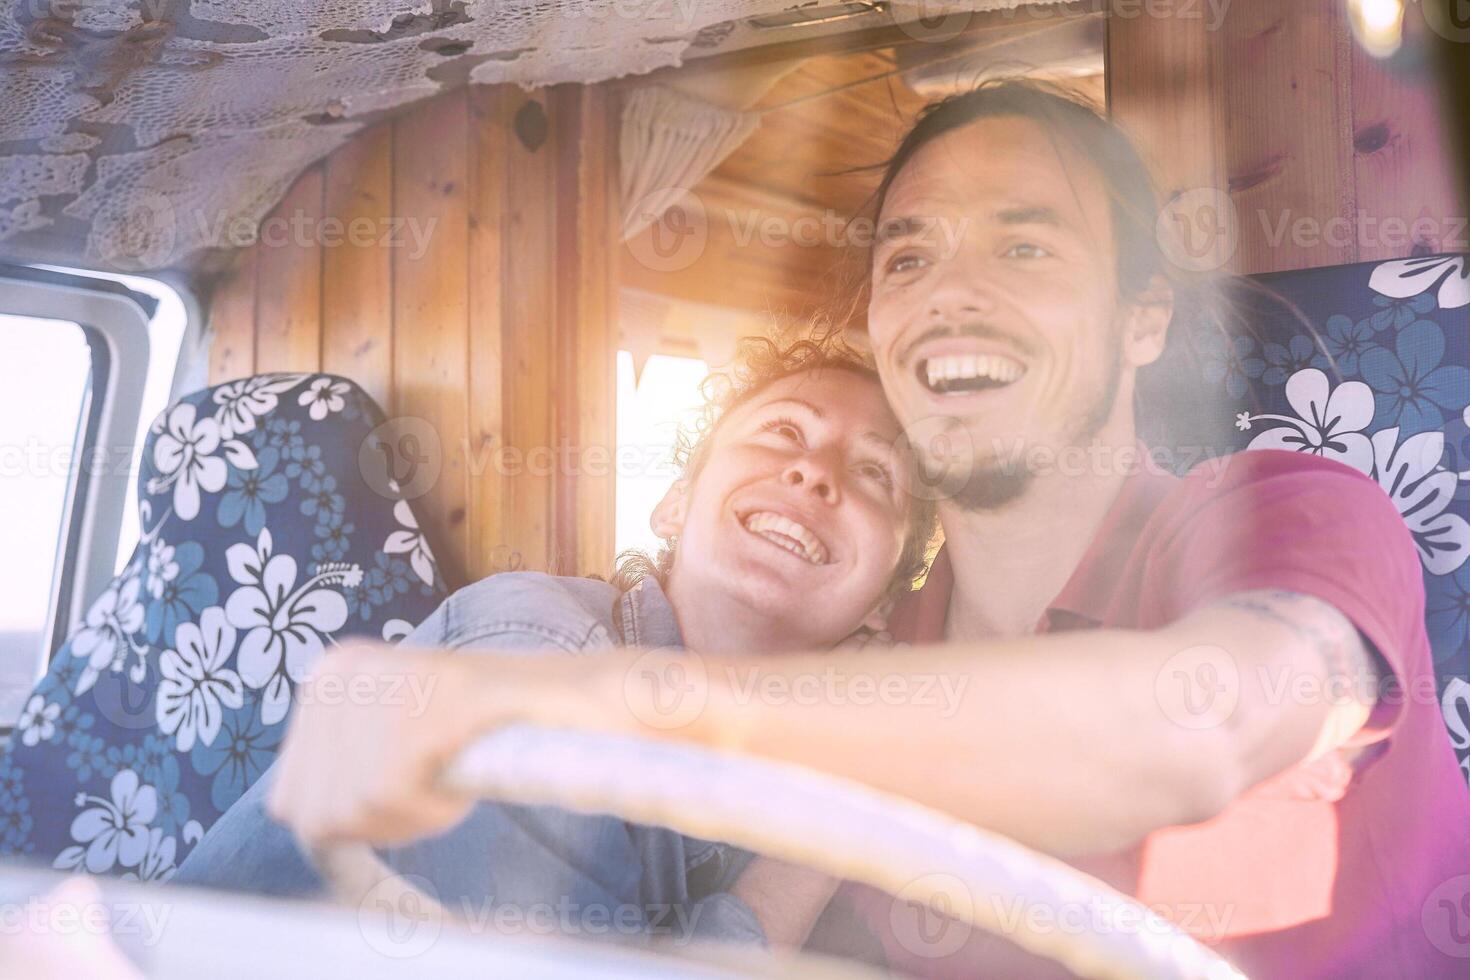 content souriant couple à l'intérieur une ancien monospace - Voyage gens excité conduite pour une route voyage avec une van campeur - vacances, aimer, relation mode de vie concept photo